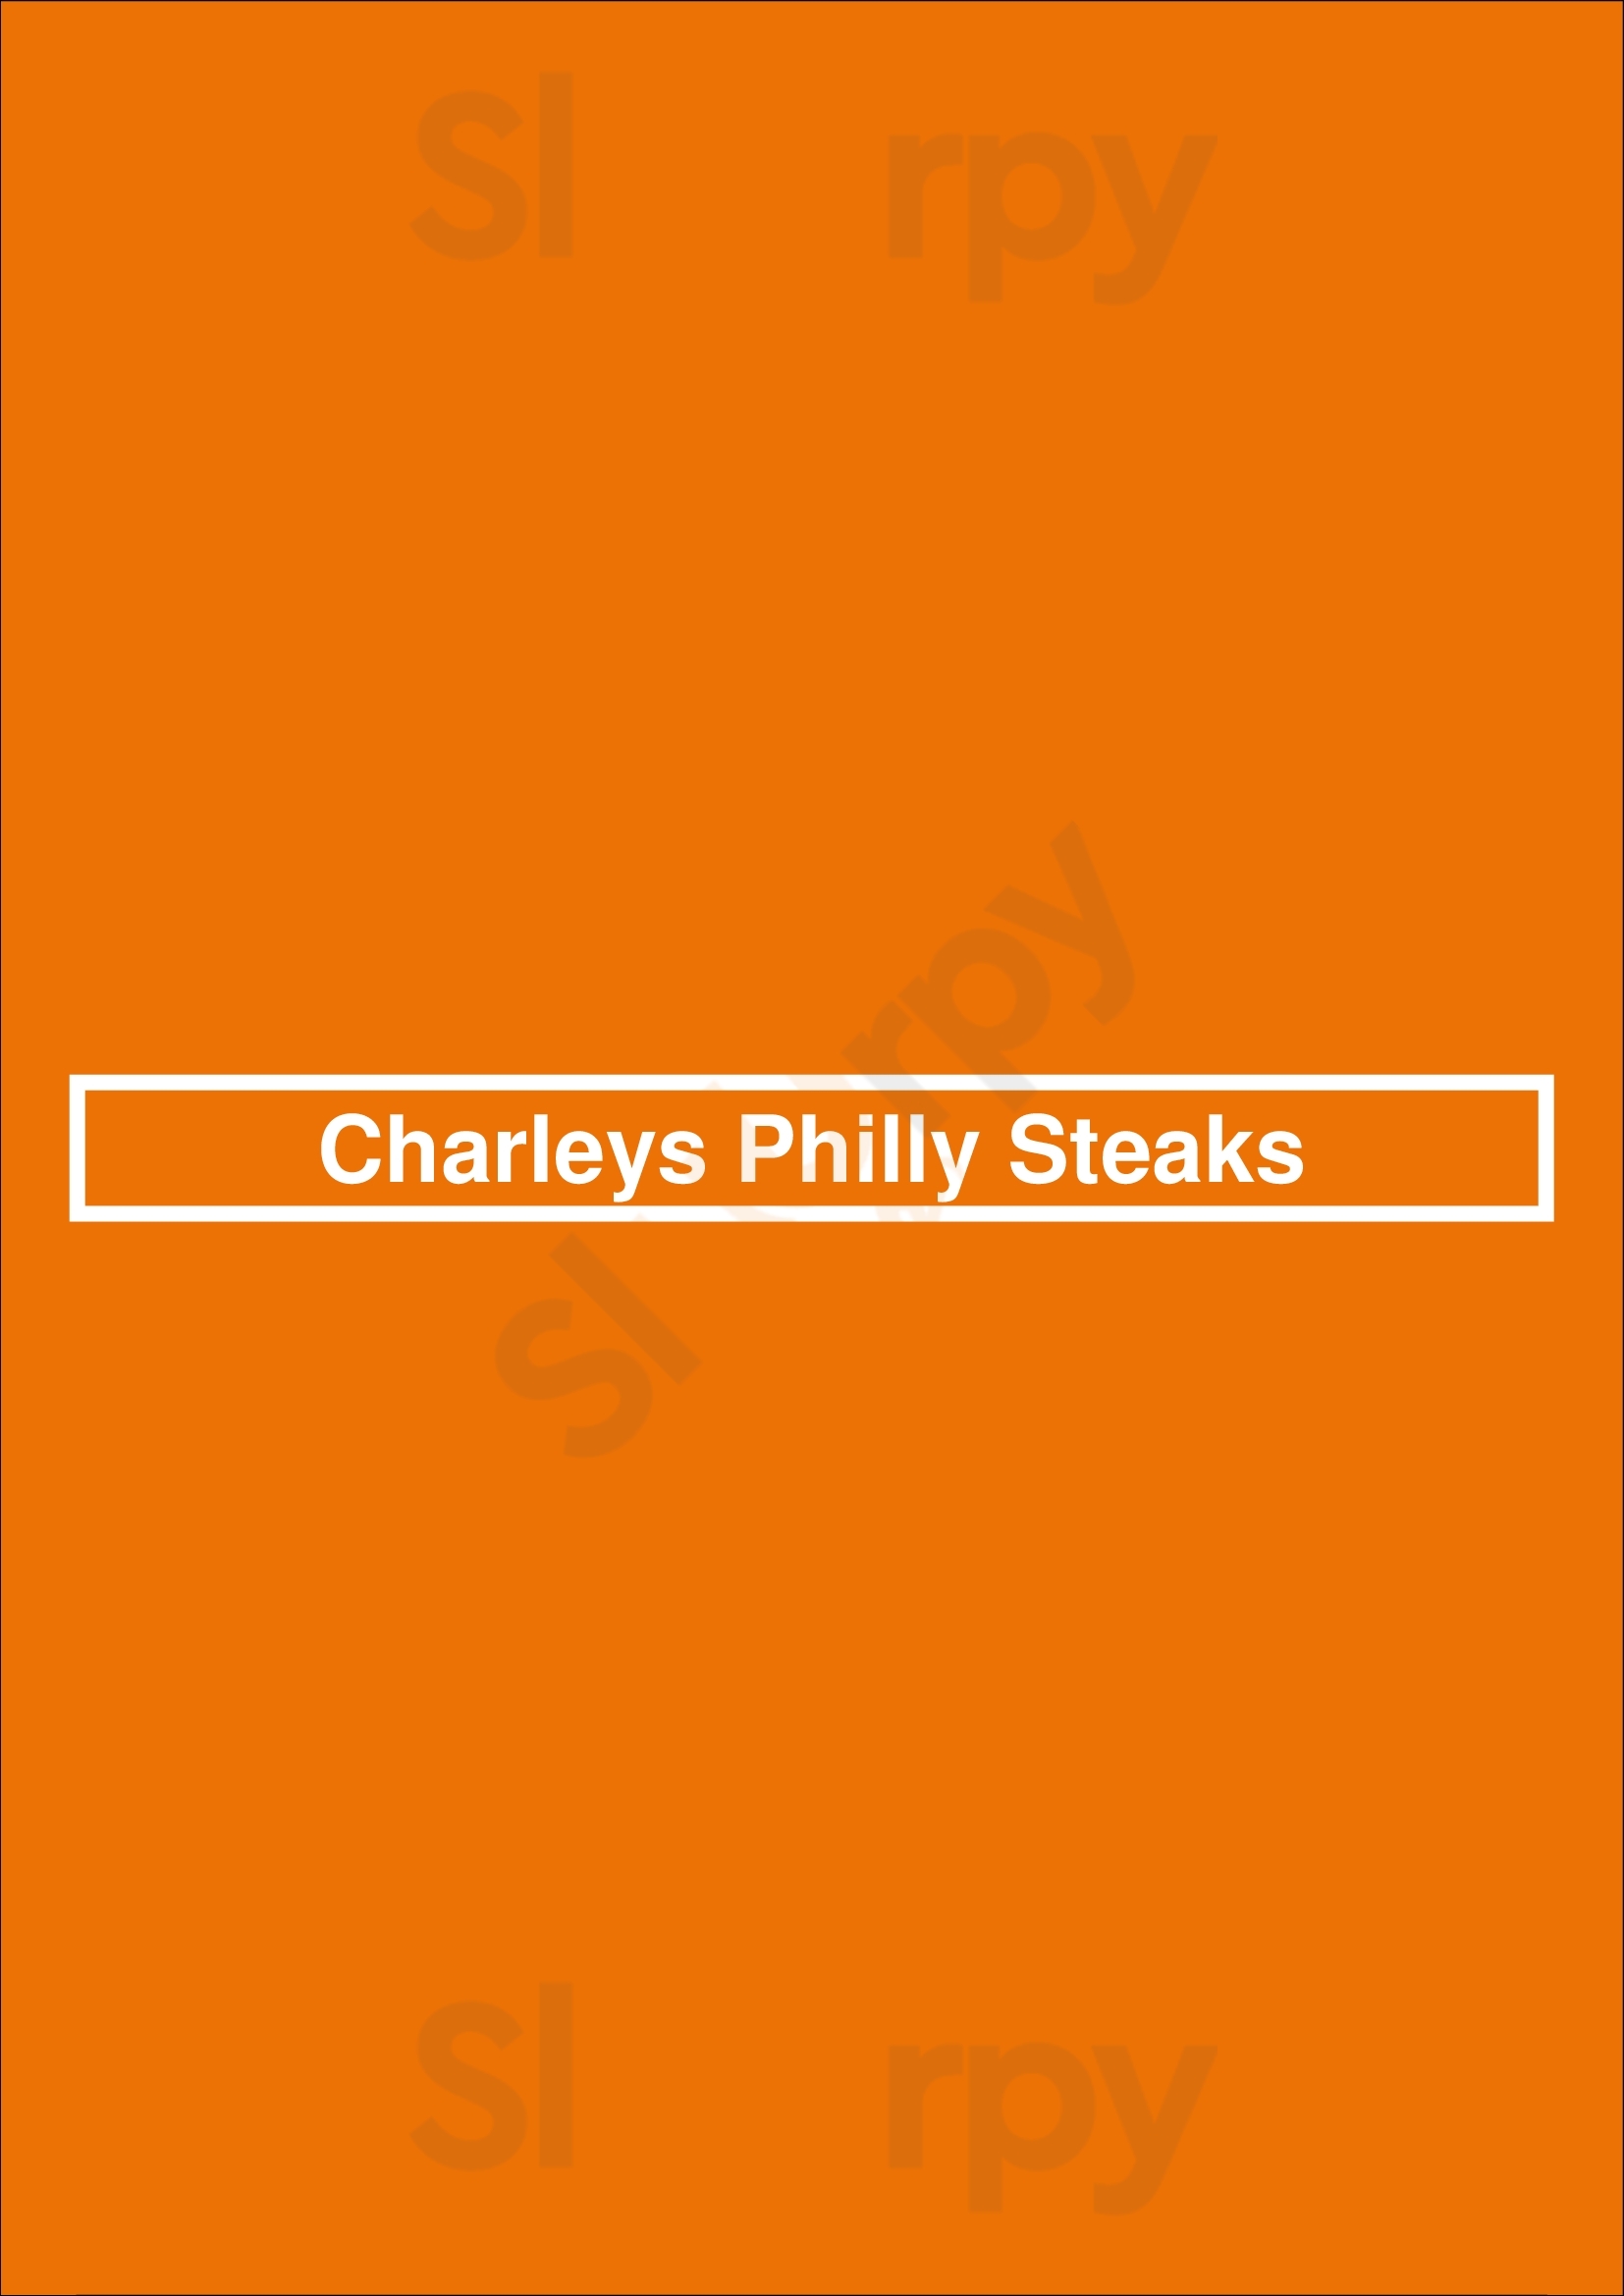 Charleys Philly Steaks Mesa Menu - 1